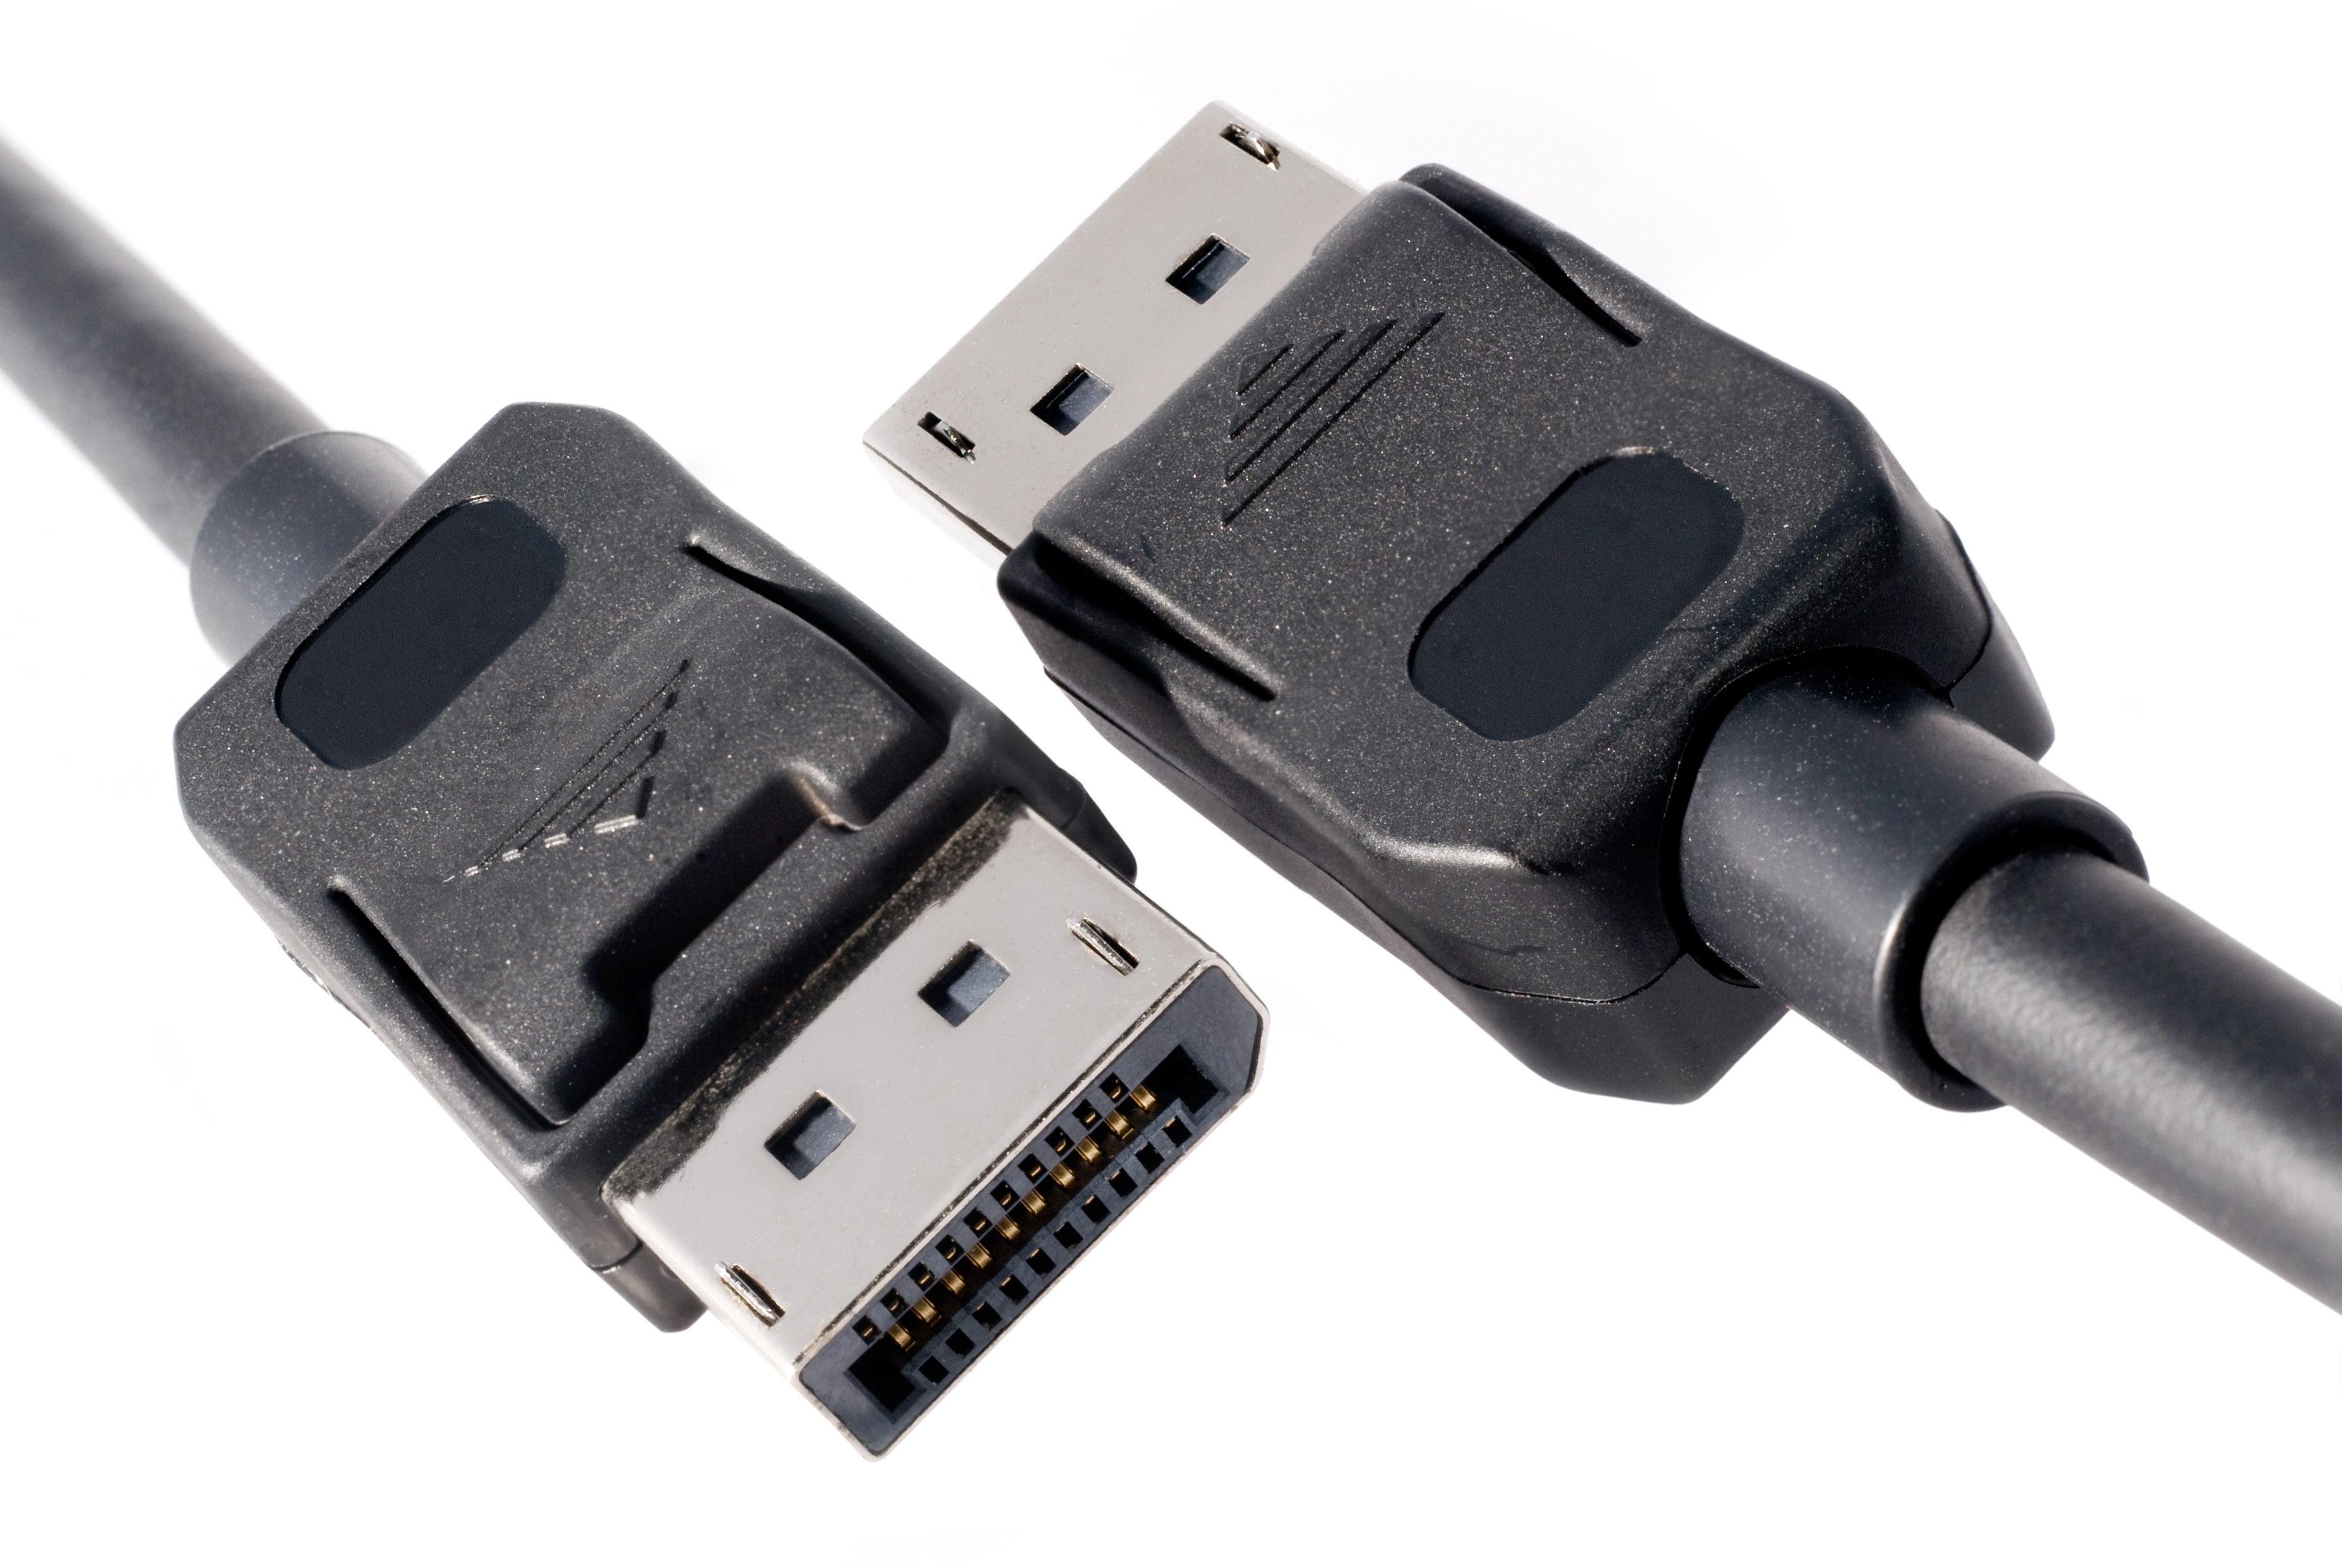 DisplayPort cable connectors for computer monitors